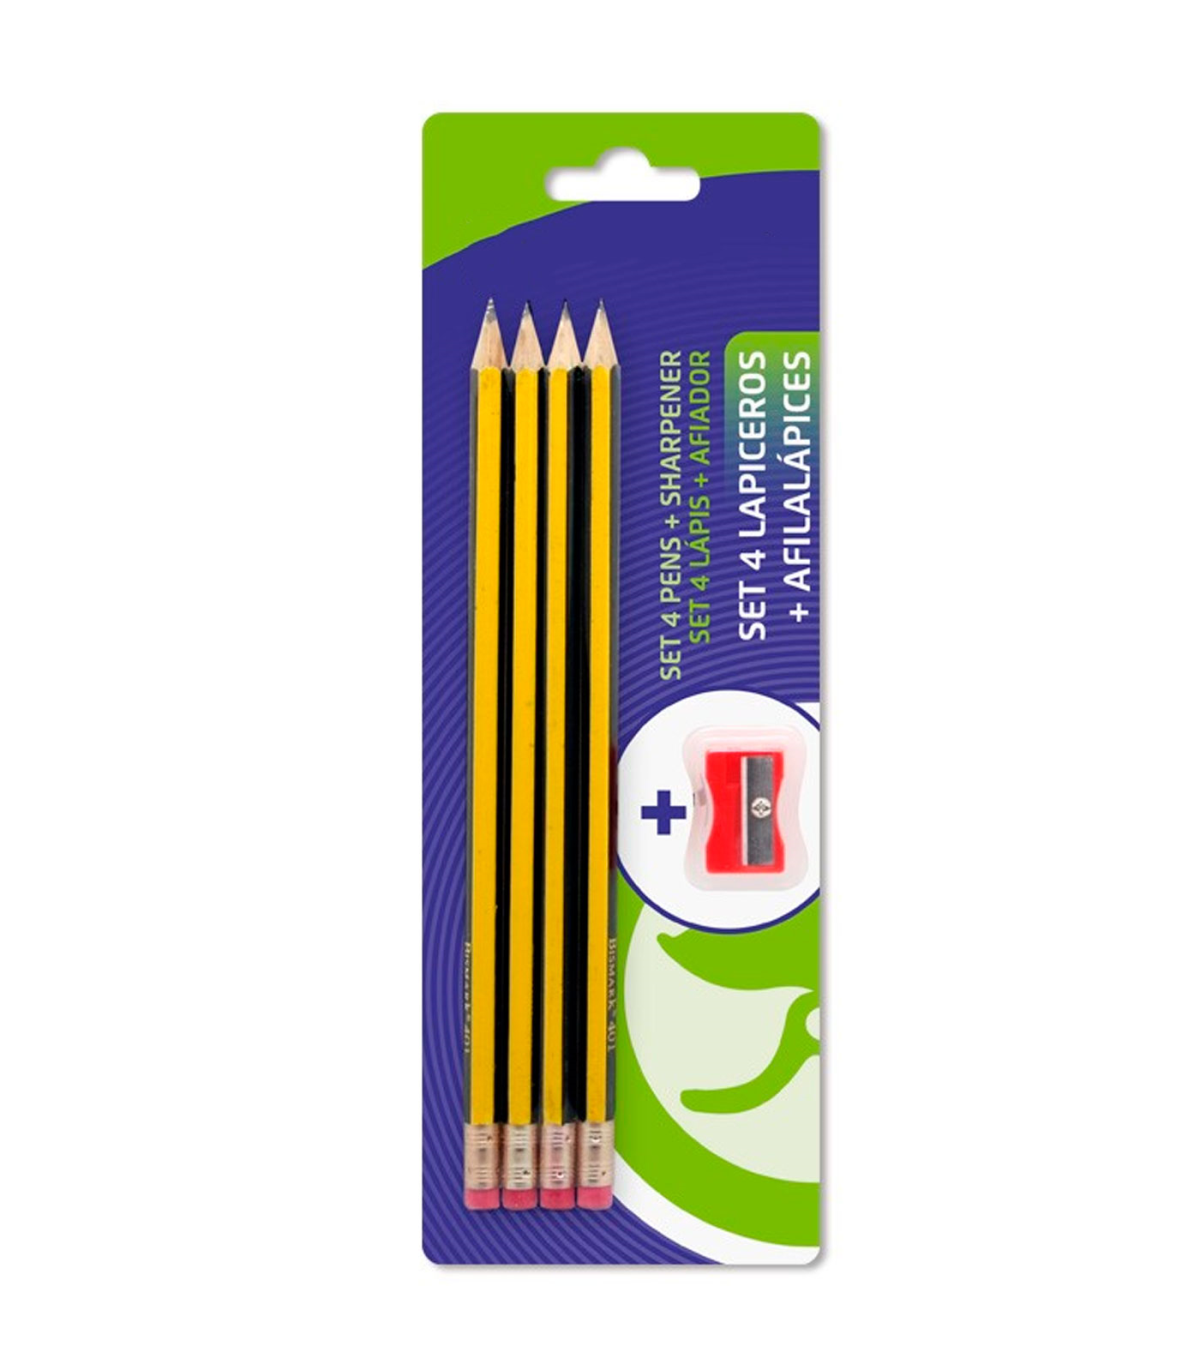 Tradineur - Set de 4 lápices con goma de borrar, 2 HB, 1 H y 1 B, grafito,  escritura suave y precisa, material escolar, oficinas